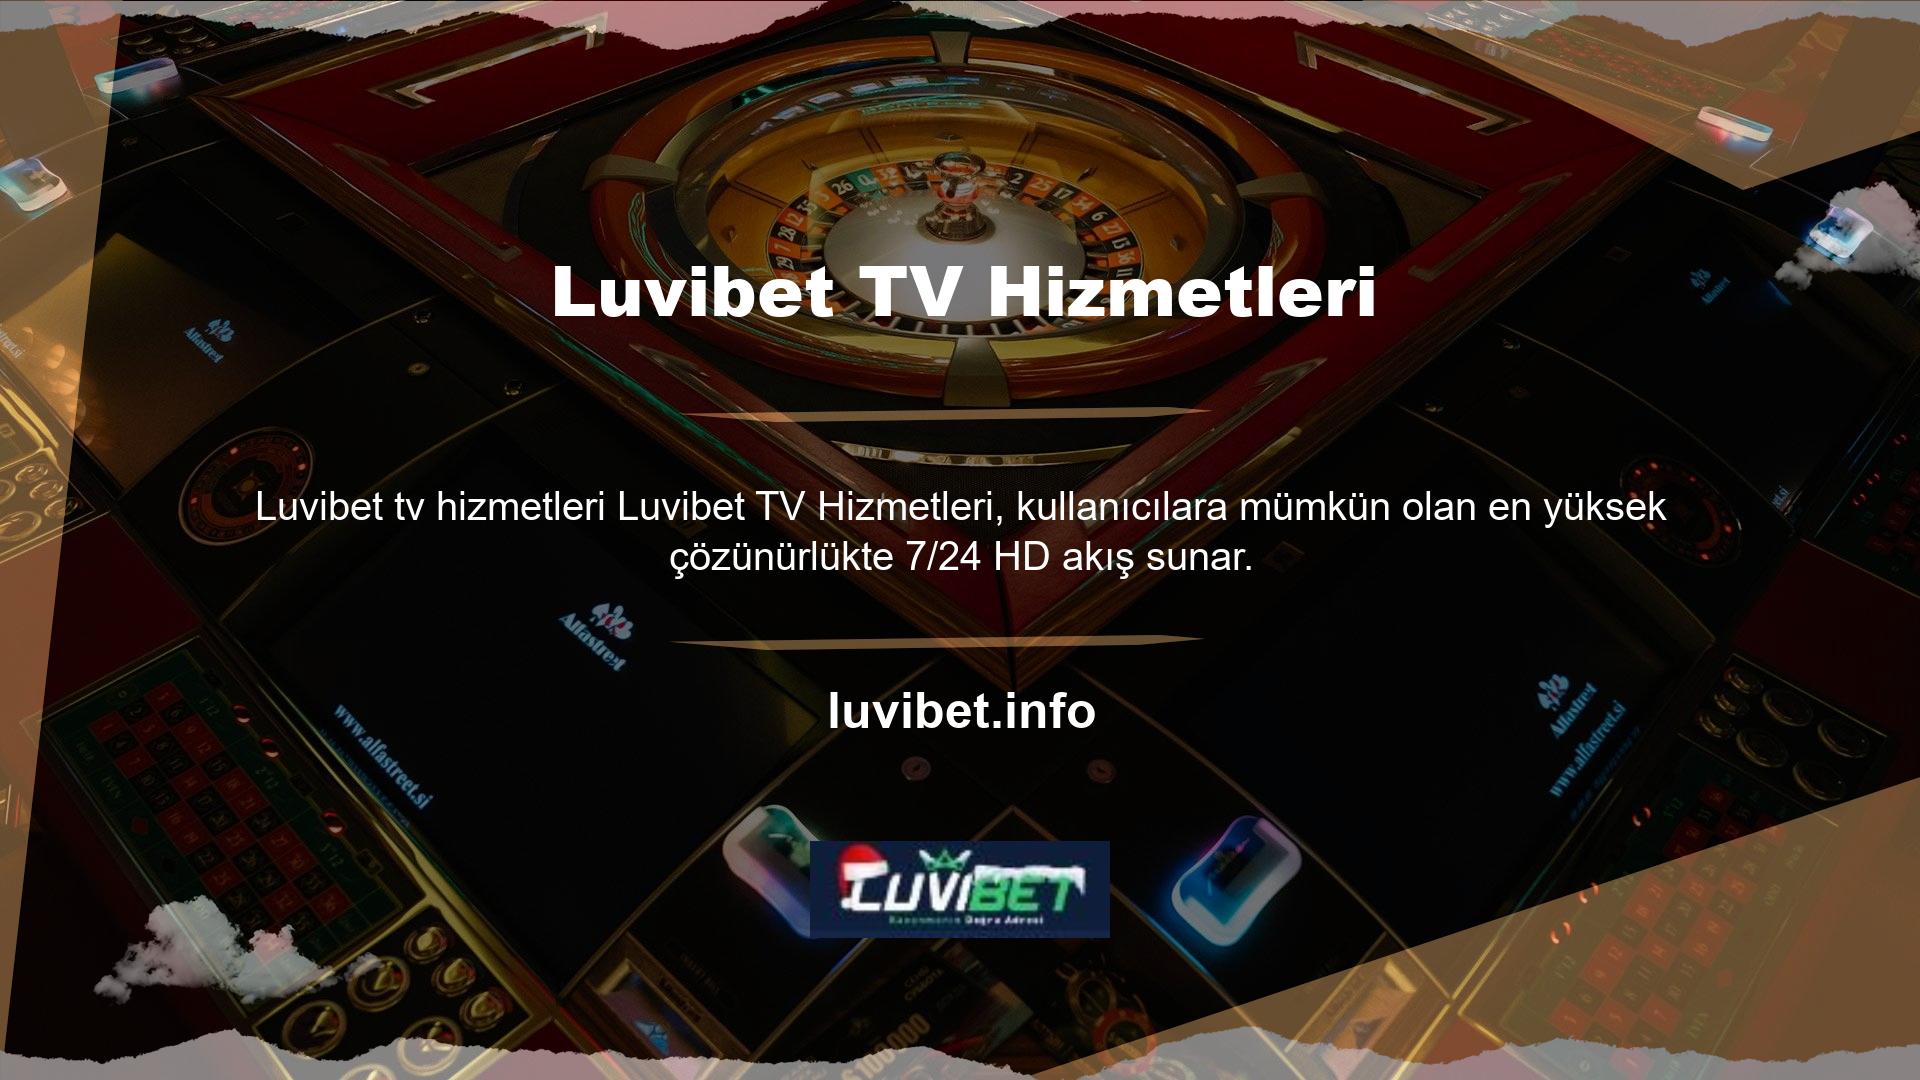 Luvibet TV abonelerine kesintisiz canlı yayın hizmeti sunmaktadır